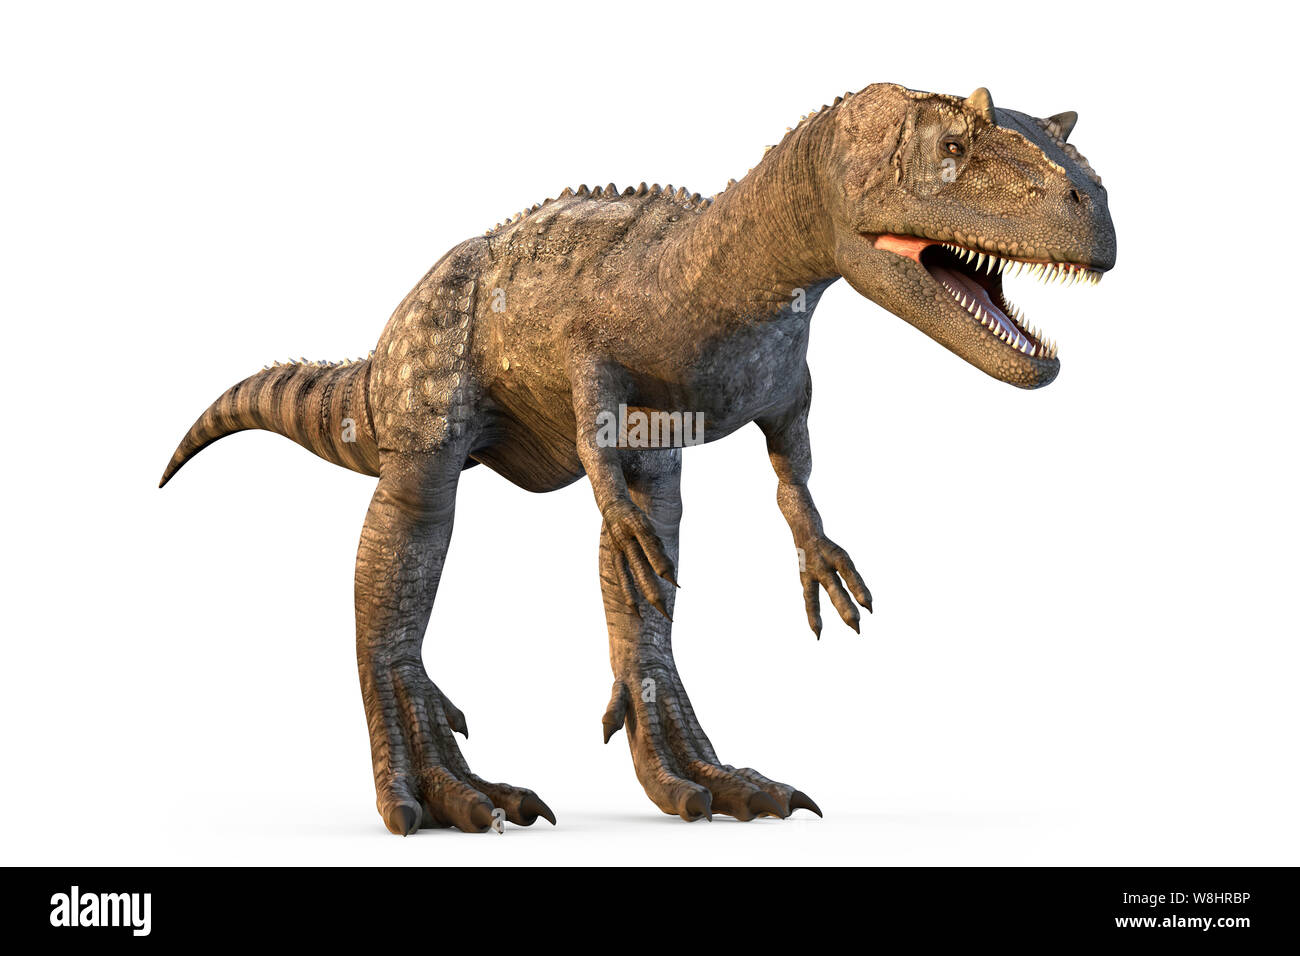 Dinosaure Allosaurus contre fond blanc, illustration. Allosaurs vécu 155-150 millions d'années durant le Jurassique tardif. Banque D'Images